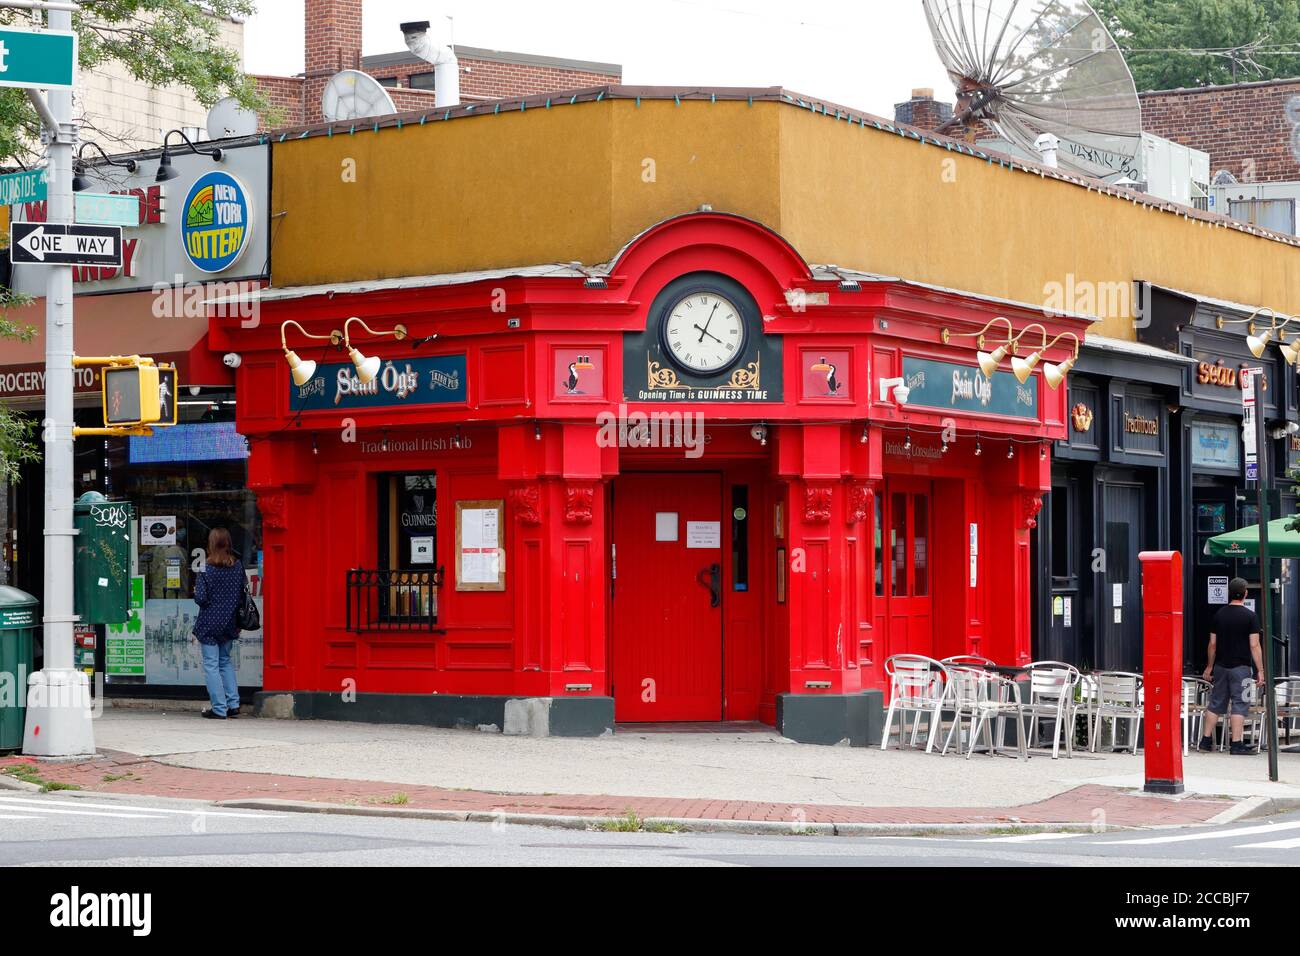 Sean og's, 60-02 Woodside Ave, Queens, NY. Façade extérieure d'un bar irlandais dans le quartier Woodside. Banque D'Images